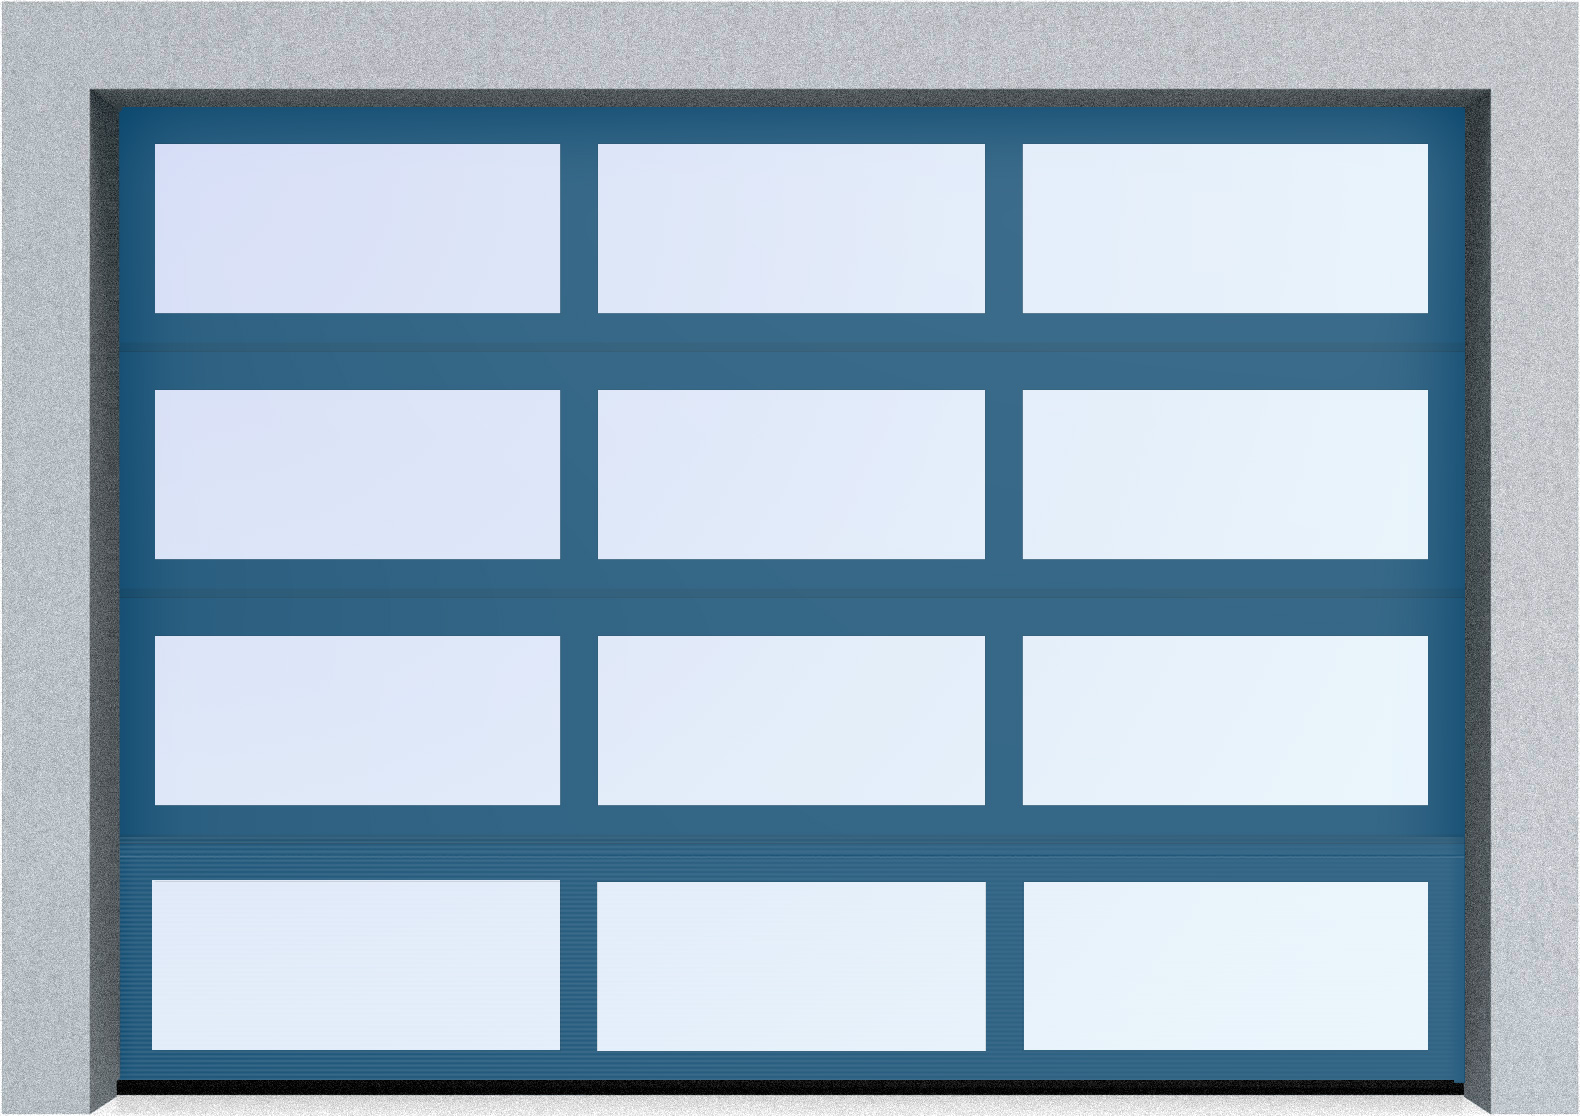  Секционные панорамные ворота серии AluTrend (АЛП) 2375х2500 нижняя панель стандартные цвета, фото 3 